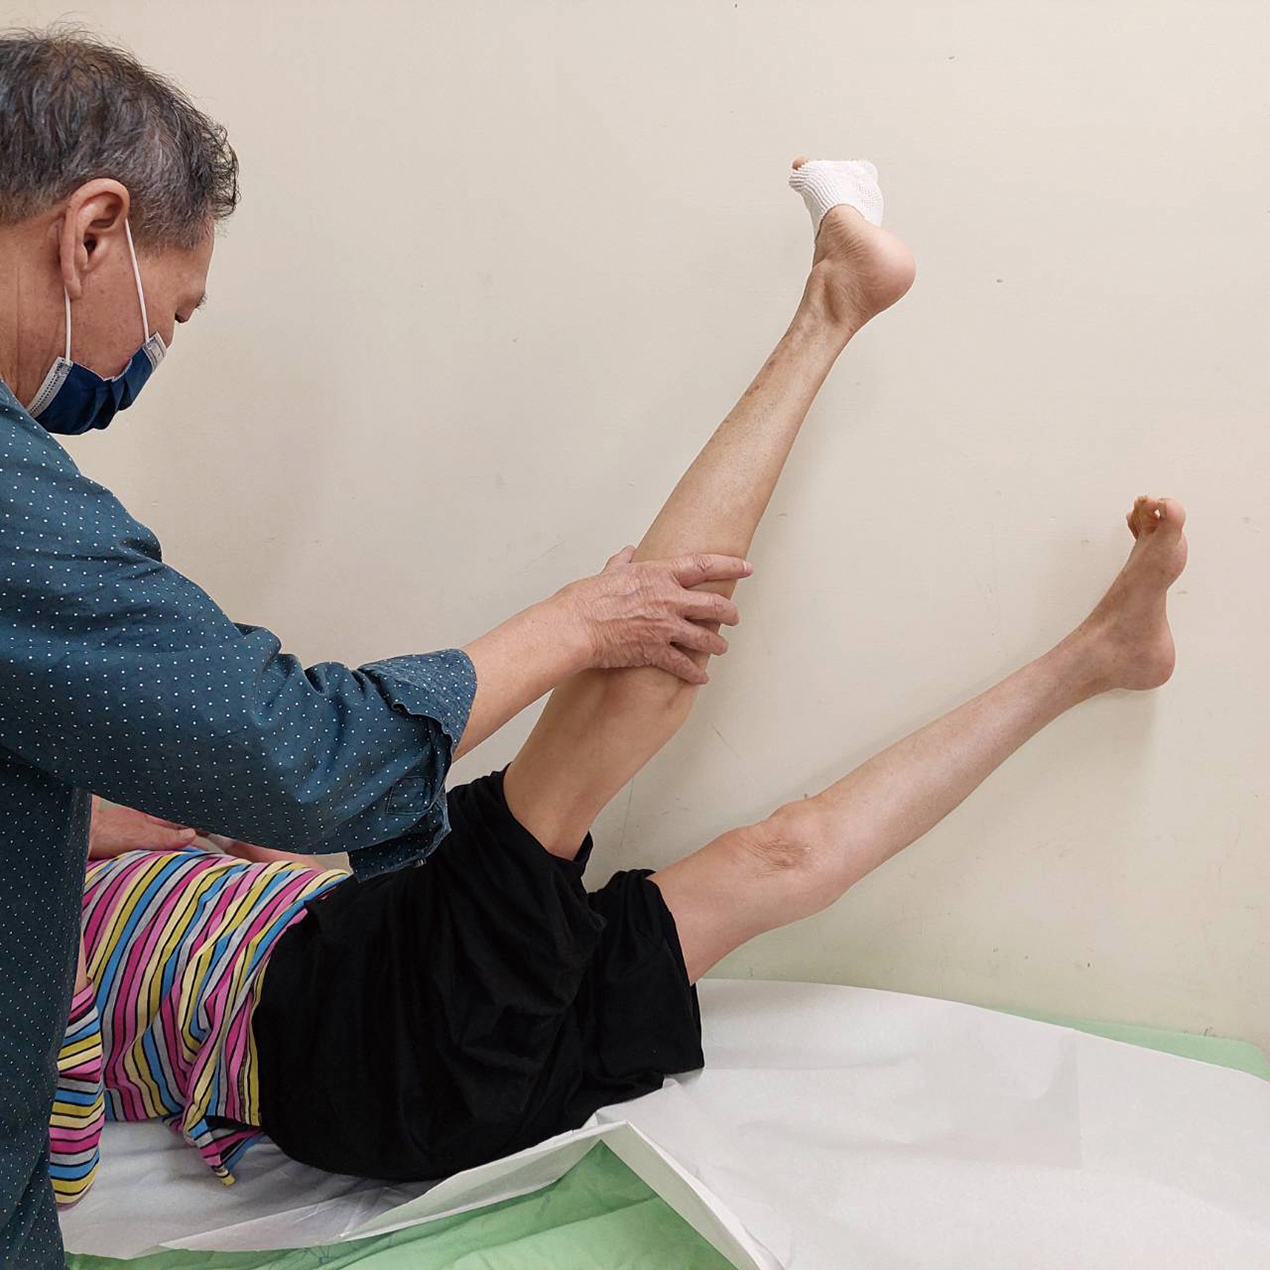 病患術前的痙攣狀態雙膝無法彎曲且身體成ㄑ字型無法平躺